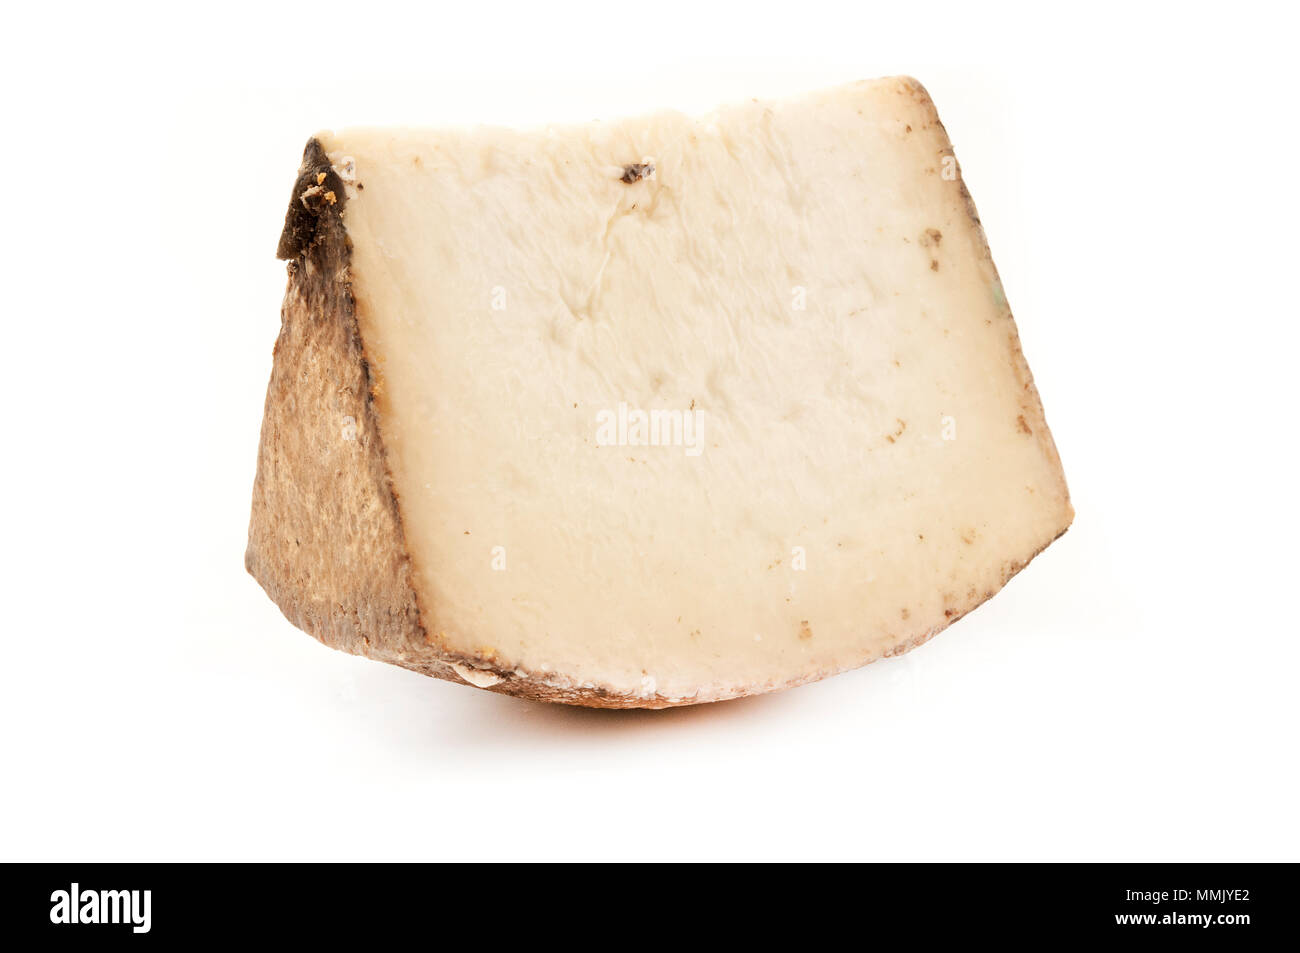 Fiore sardo (or Pecorino Sardo) cheese on a white background Stock Photo